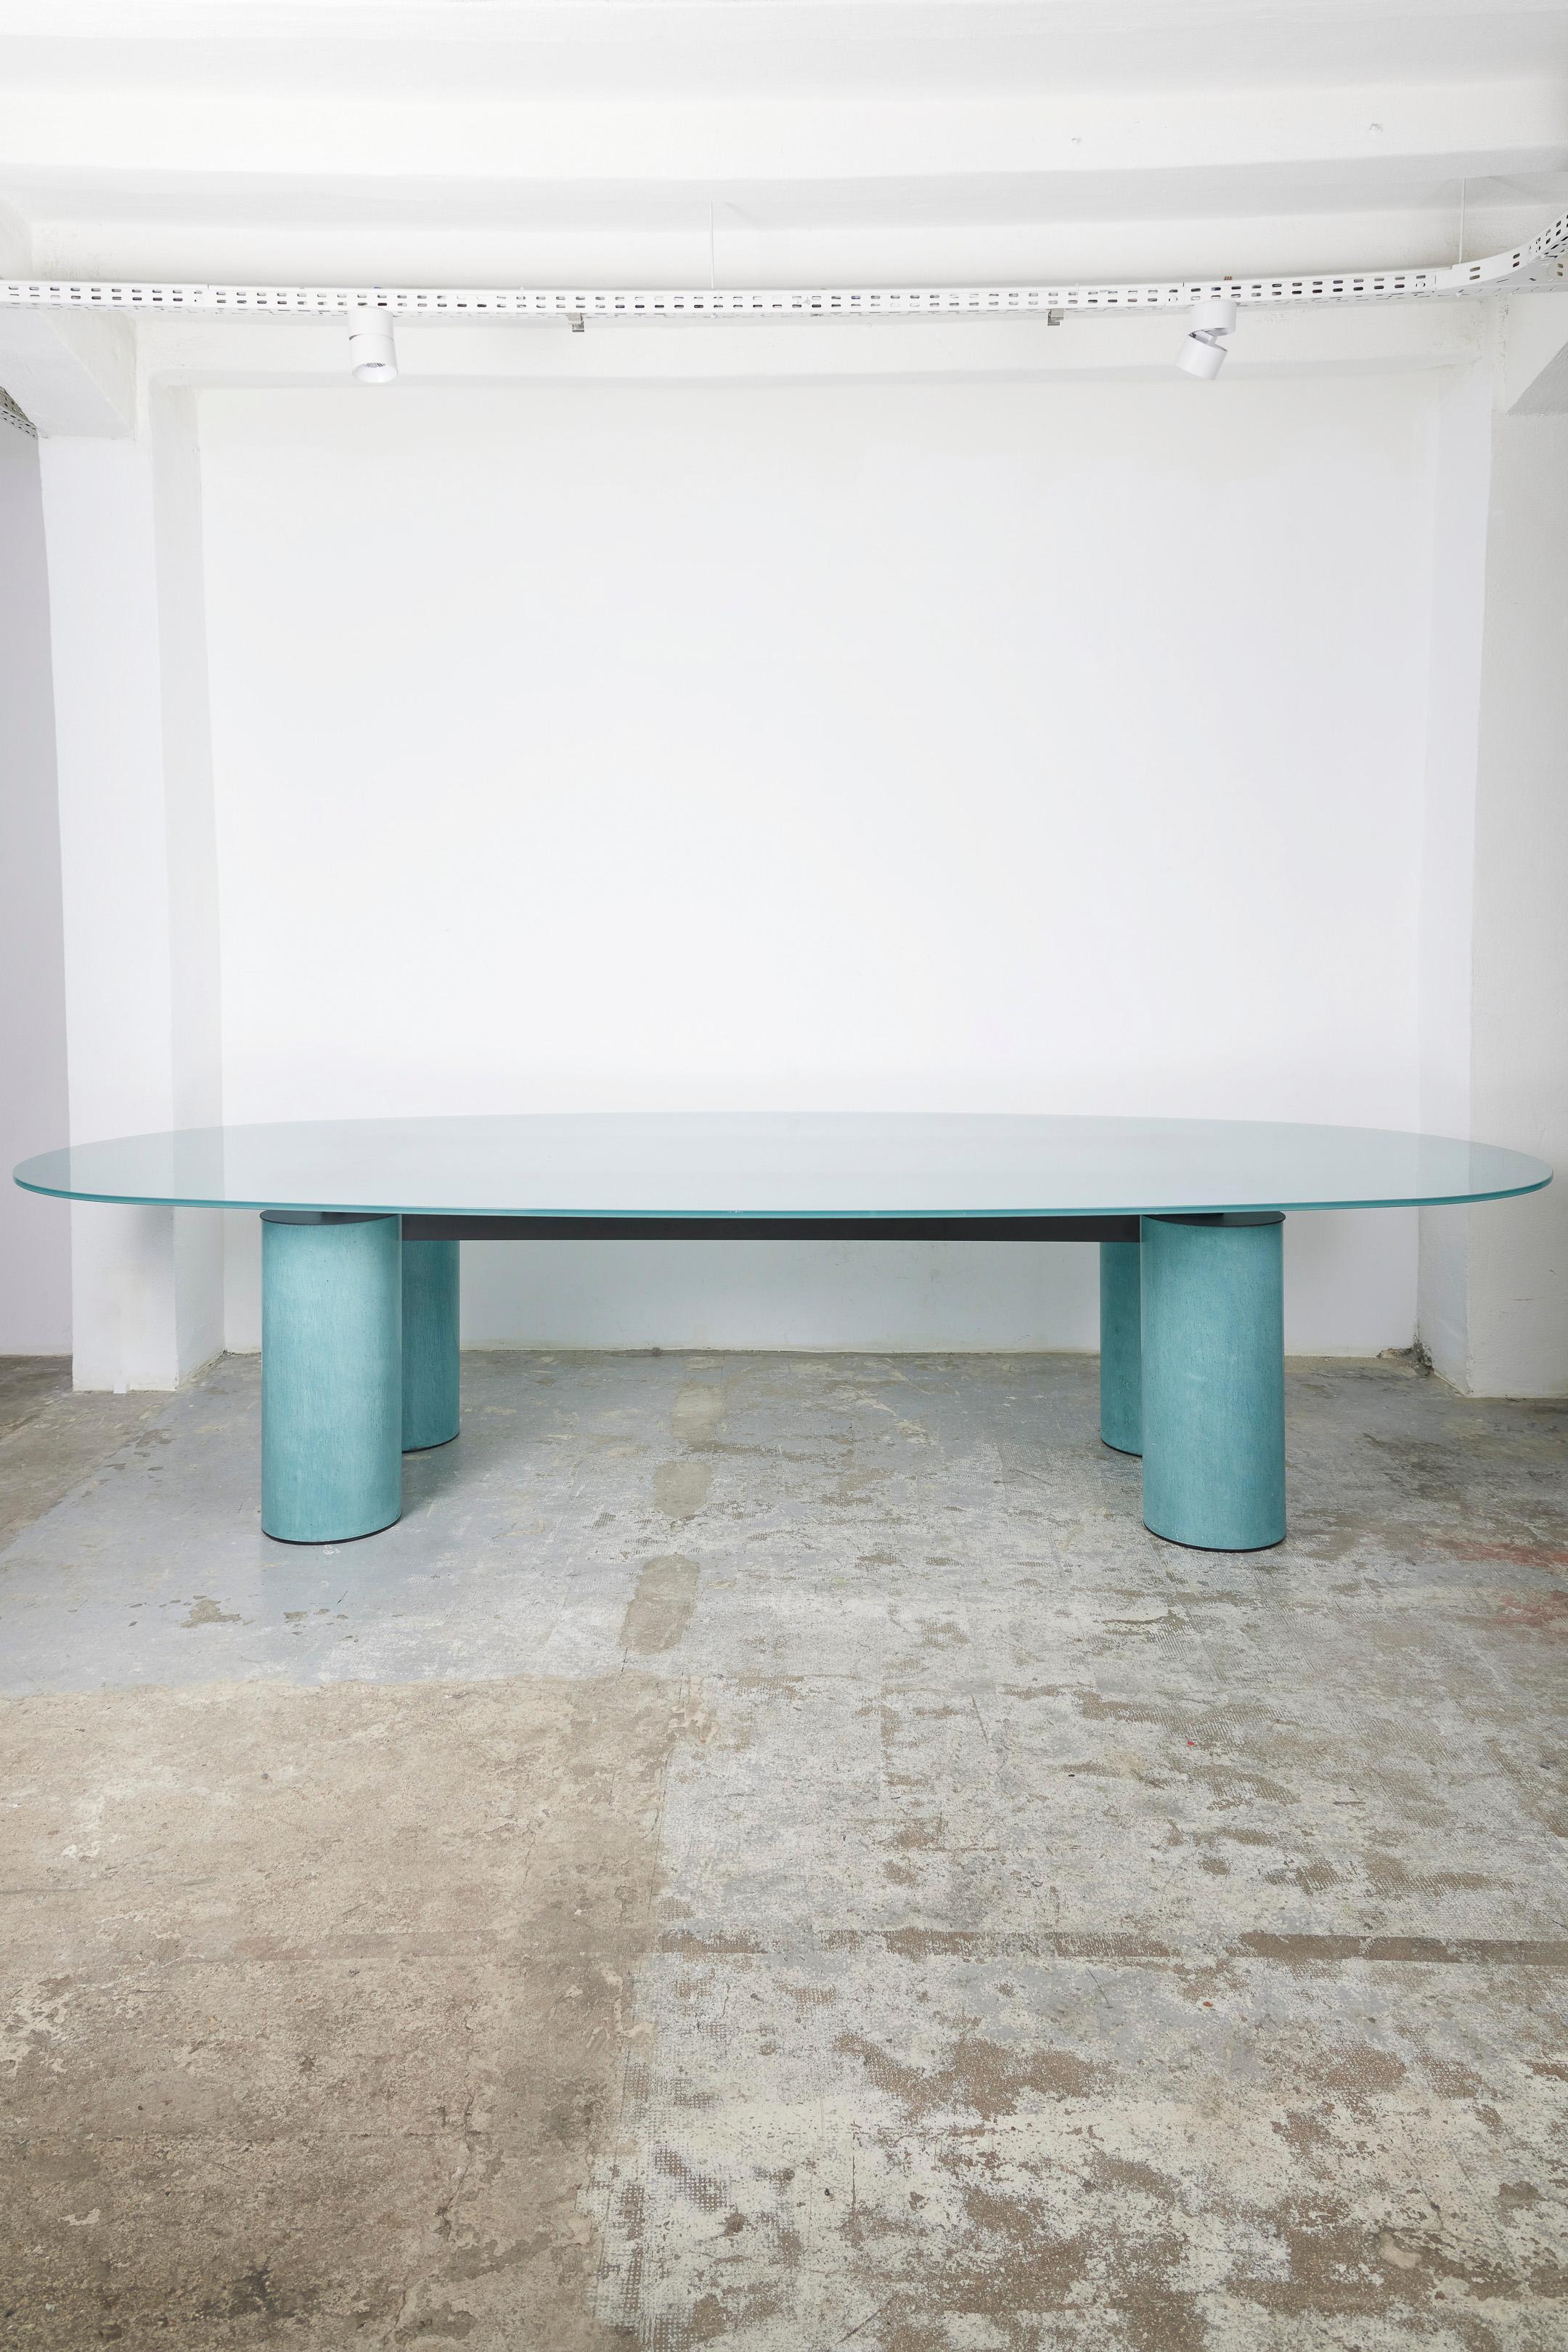 Gran mesa de comedor Serenissimo de los diseñadores Lella (1934-2016) y Massimo Vignelli (1931-2014), editada por Acerbis, de la década de 1970. La tapa ovalada de cristal descansa sobre cuatro patas de metal lacado en verde. Buen estado.
LP1560